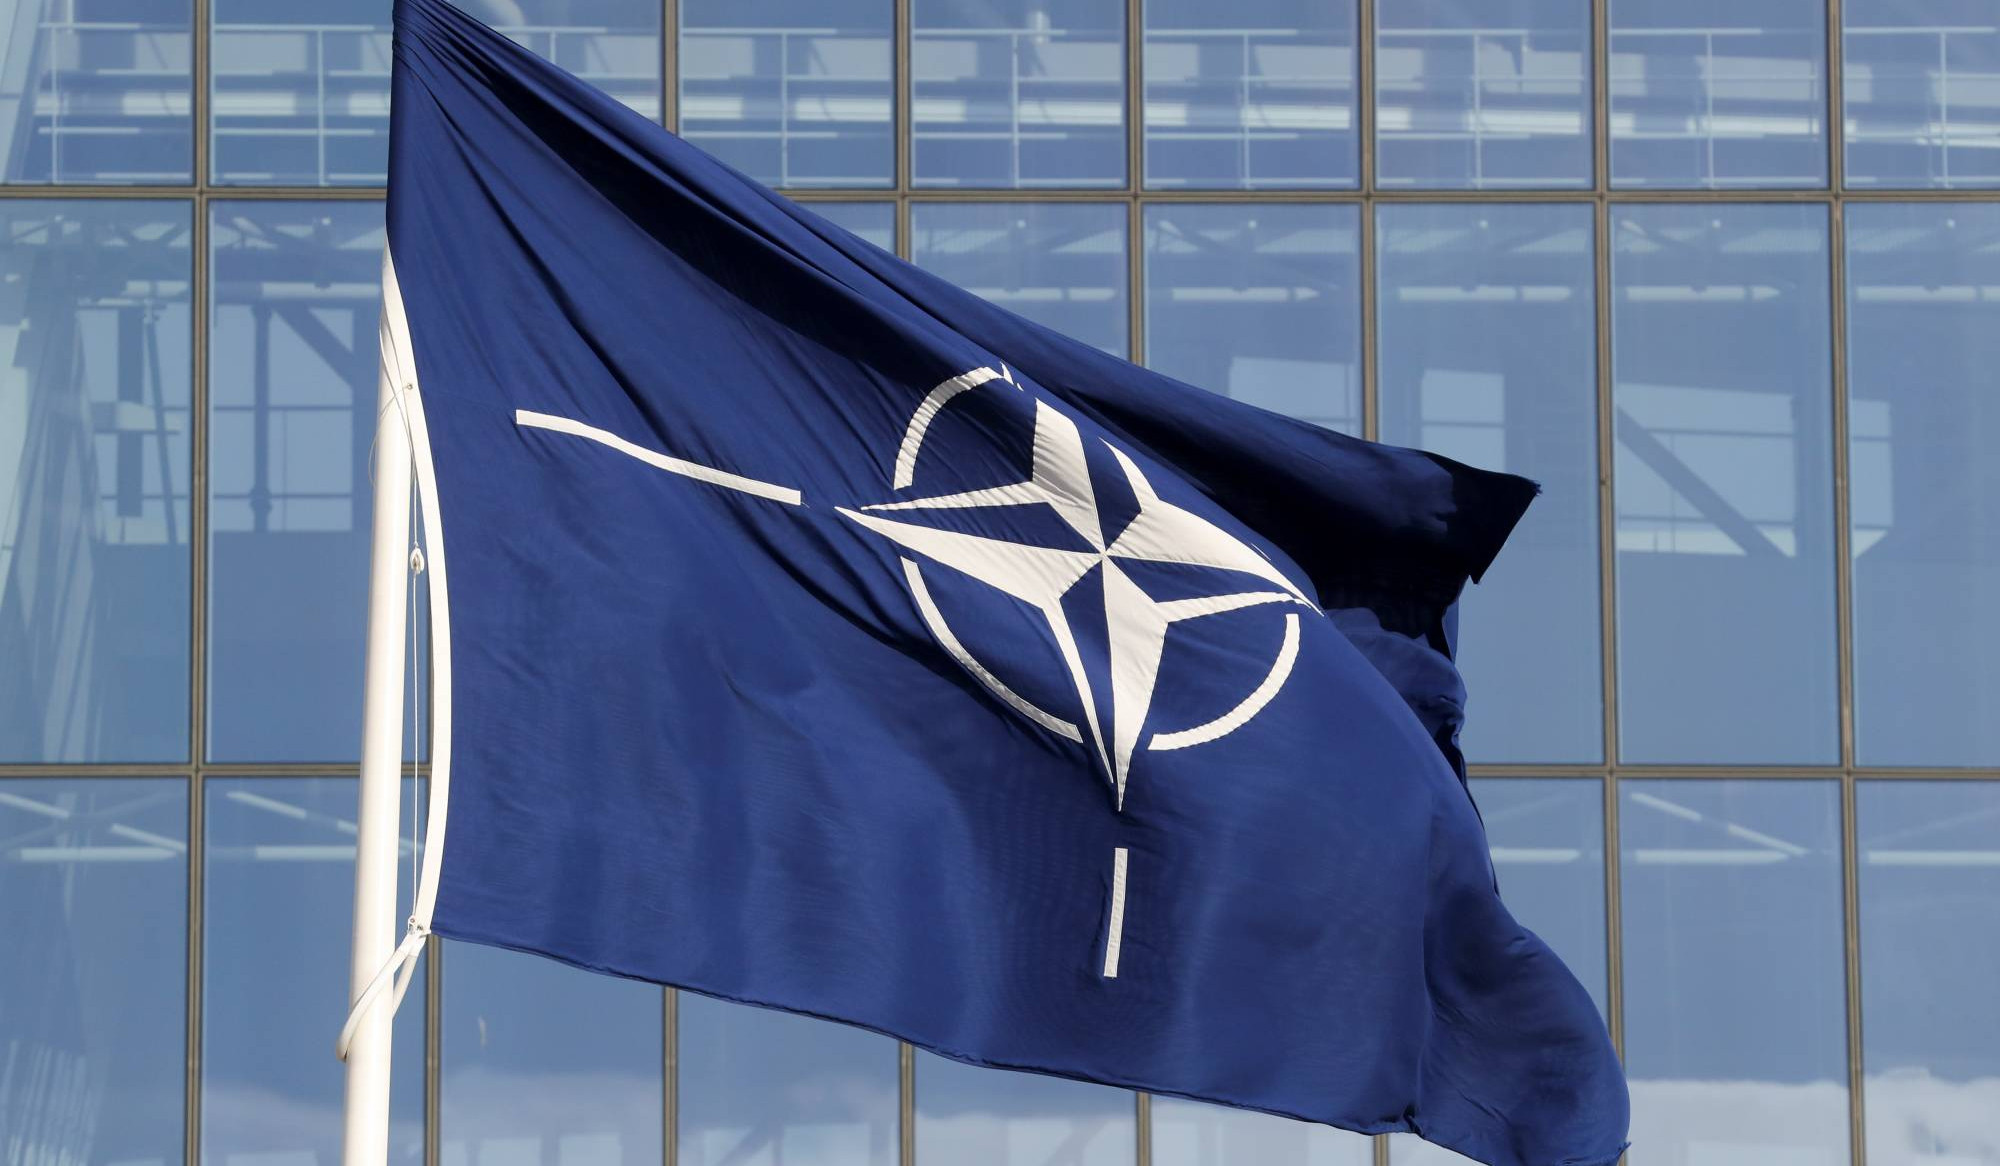 Ermenistan, Washington'da yapılacak NATO zirvesine katılacak